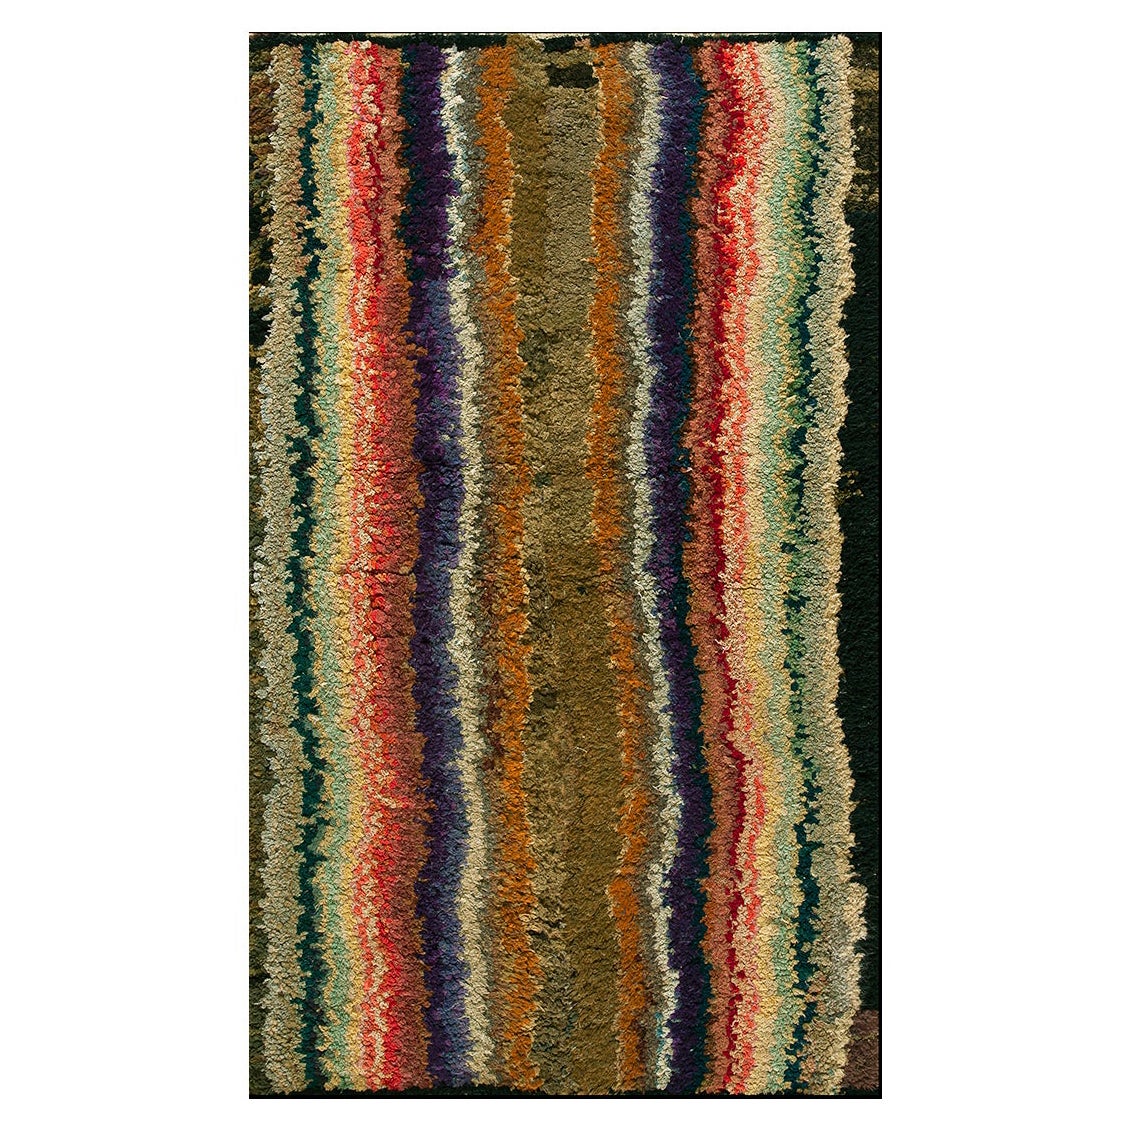 Amerikanischer Shaker-Teppich des 19. Jahrhunderts ( 3' x 4'9" - 92 x 145)